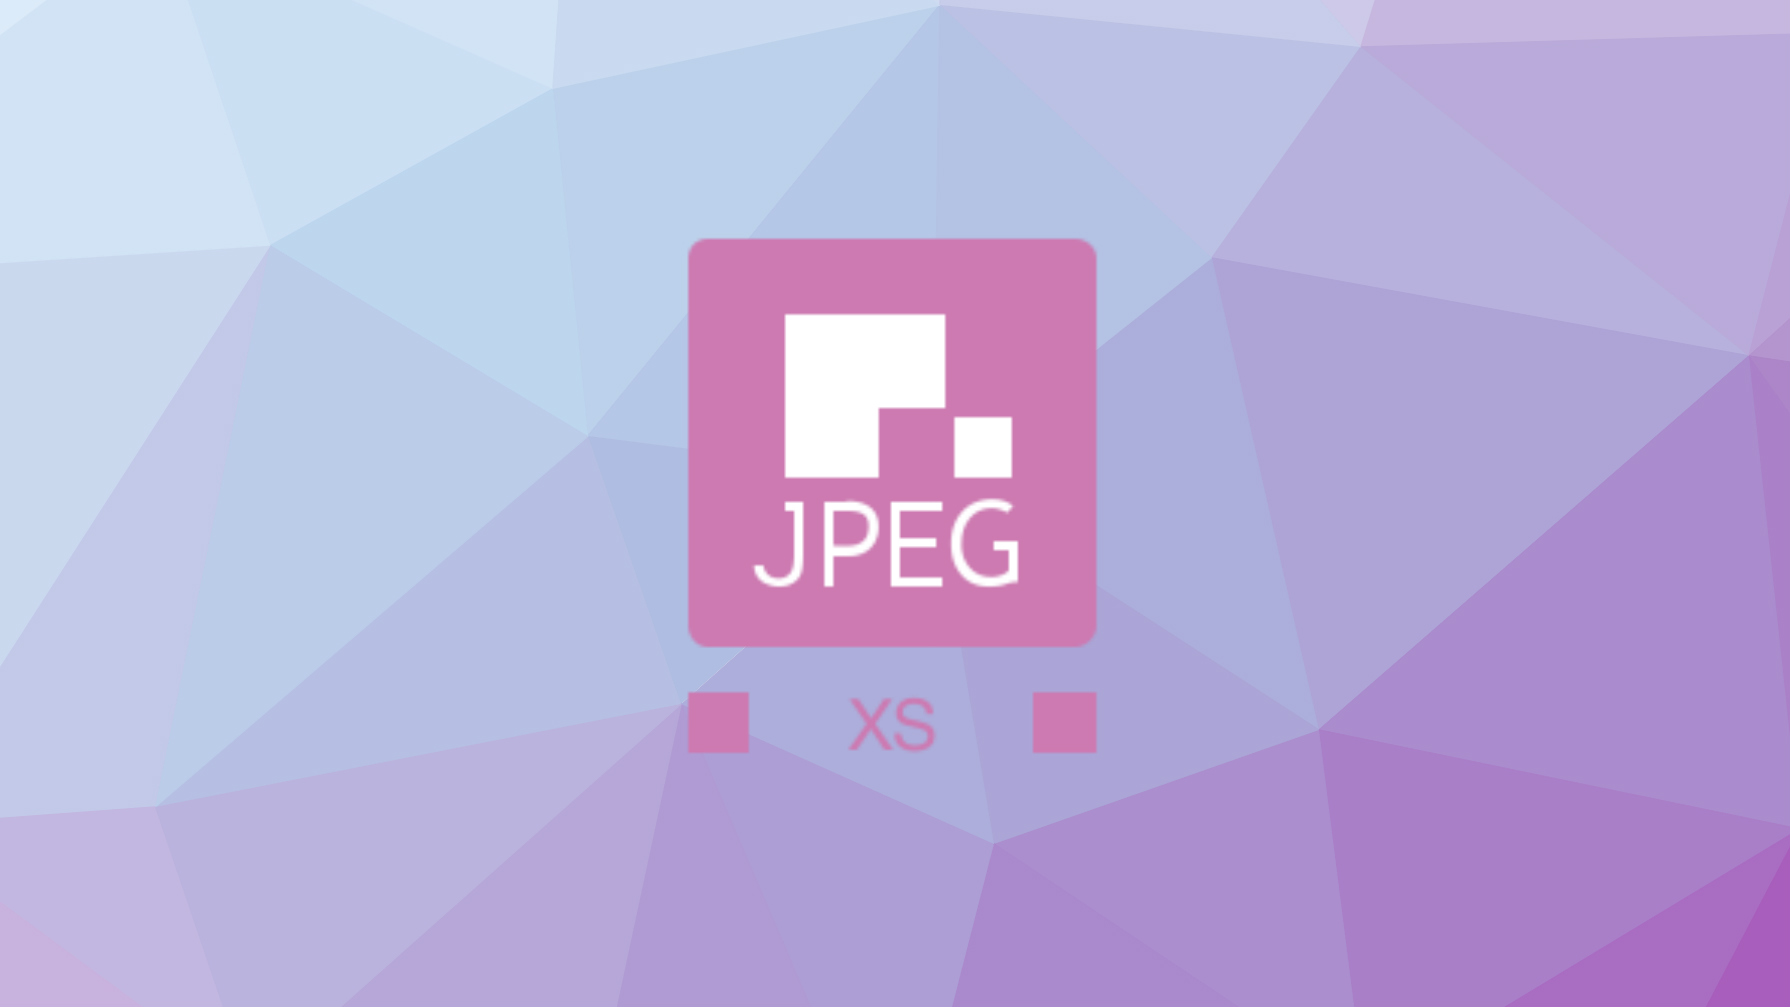 Nace JPEG XS, estándar de comprensión sin pérdidas y ahorro en el consumo energético